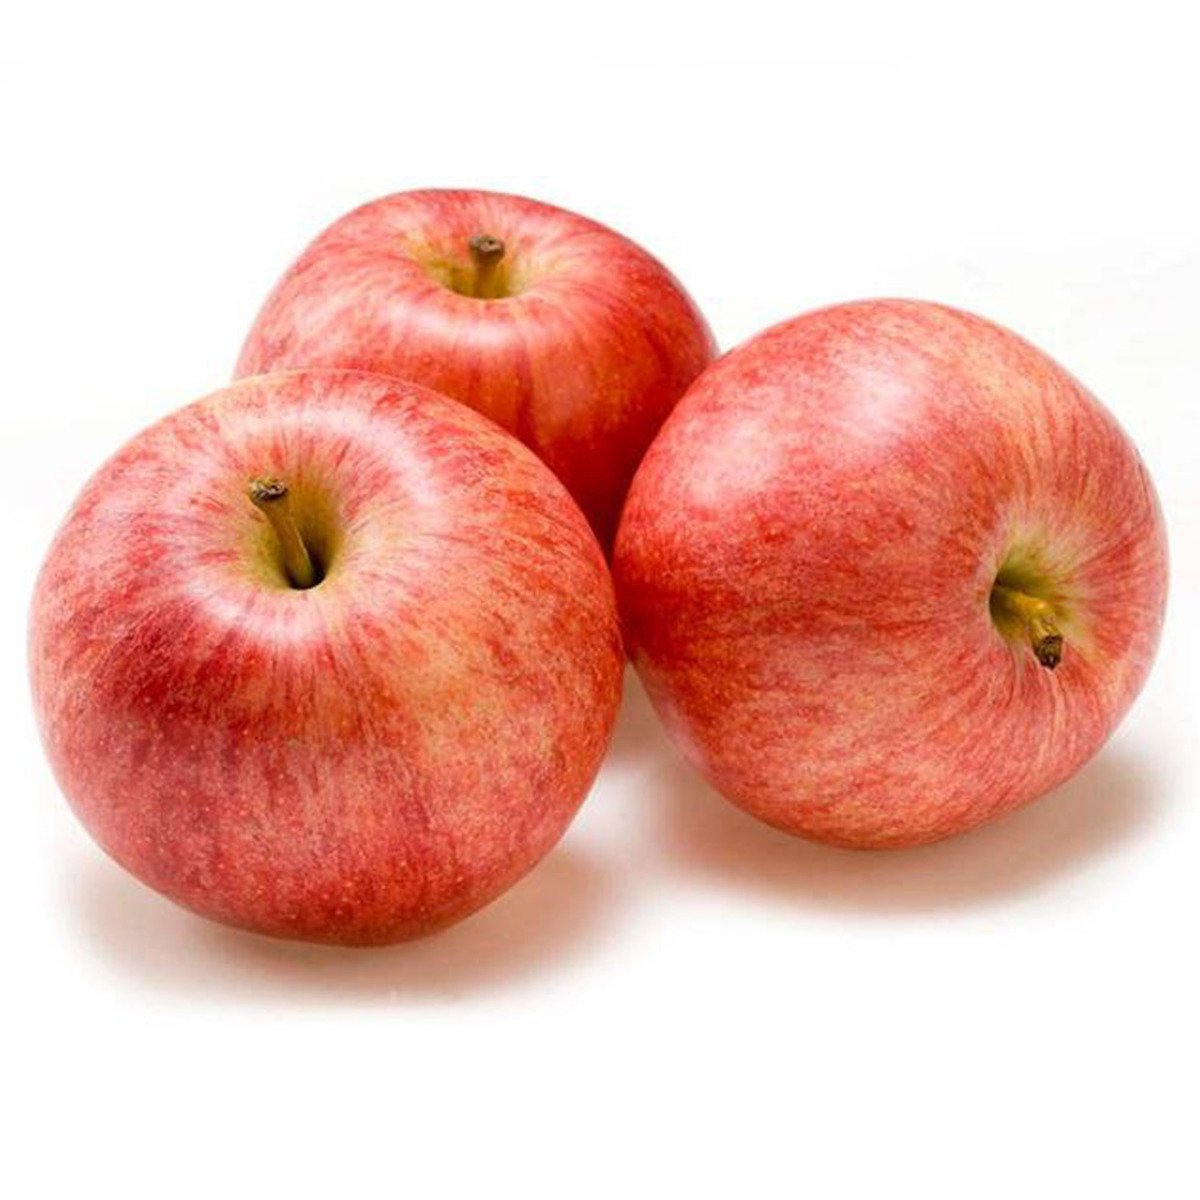 اشتري قم بشراء تفاح رويال جالا اسباني ١ كجم تقريبا Online at Best Price من الموقع - من لولو هايبر ماركت Apples في السعودية